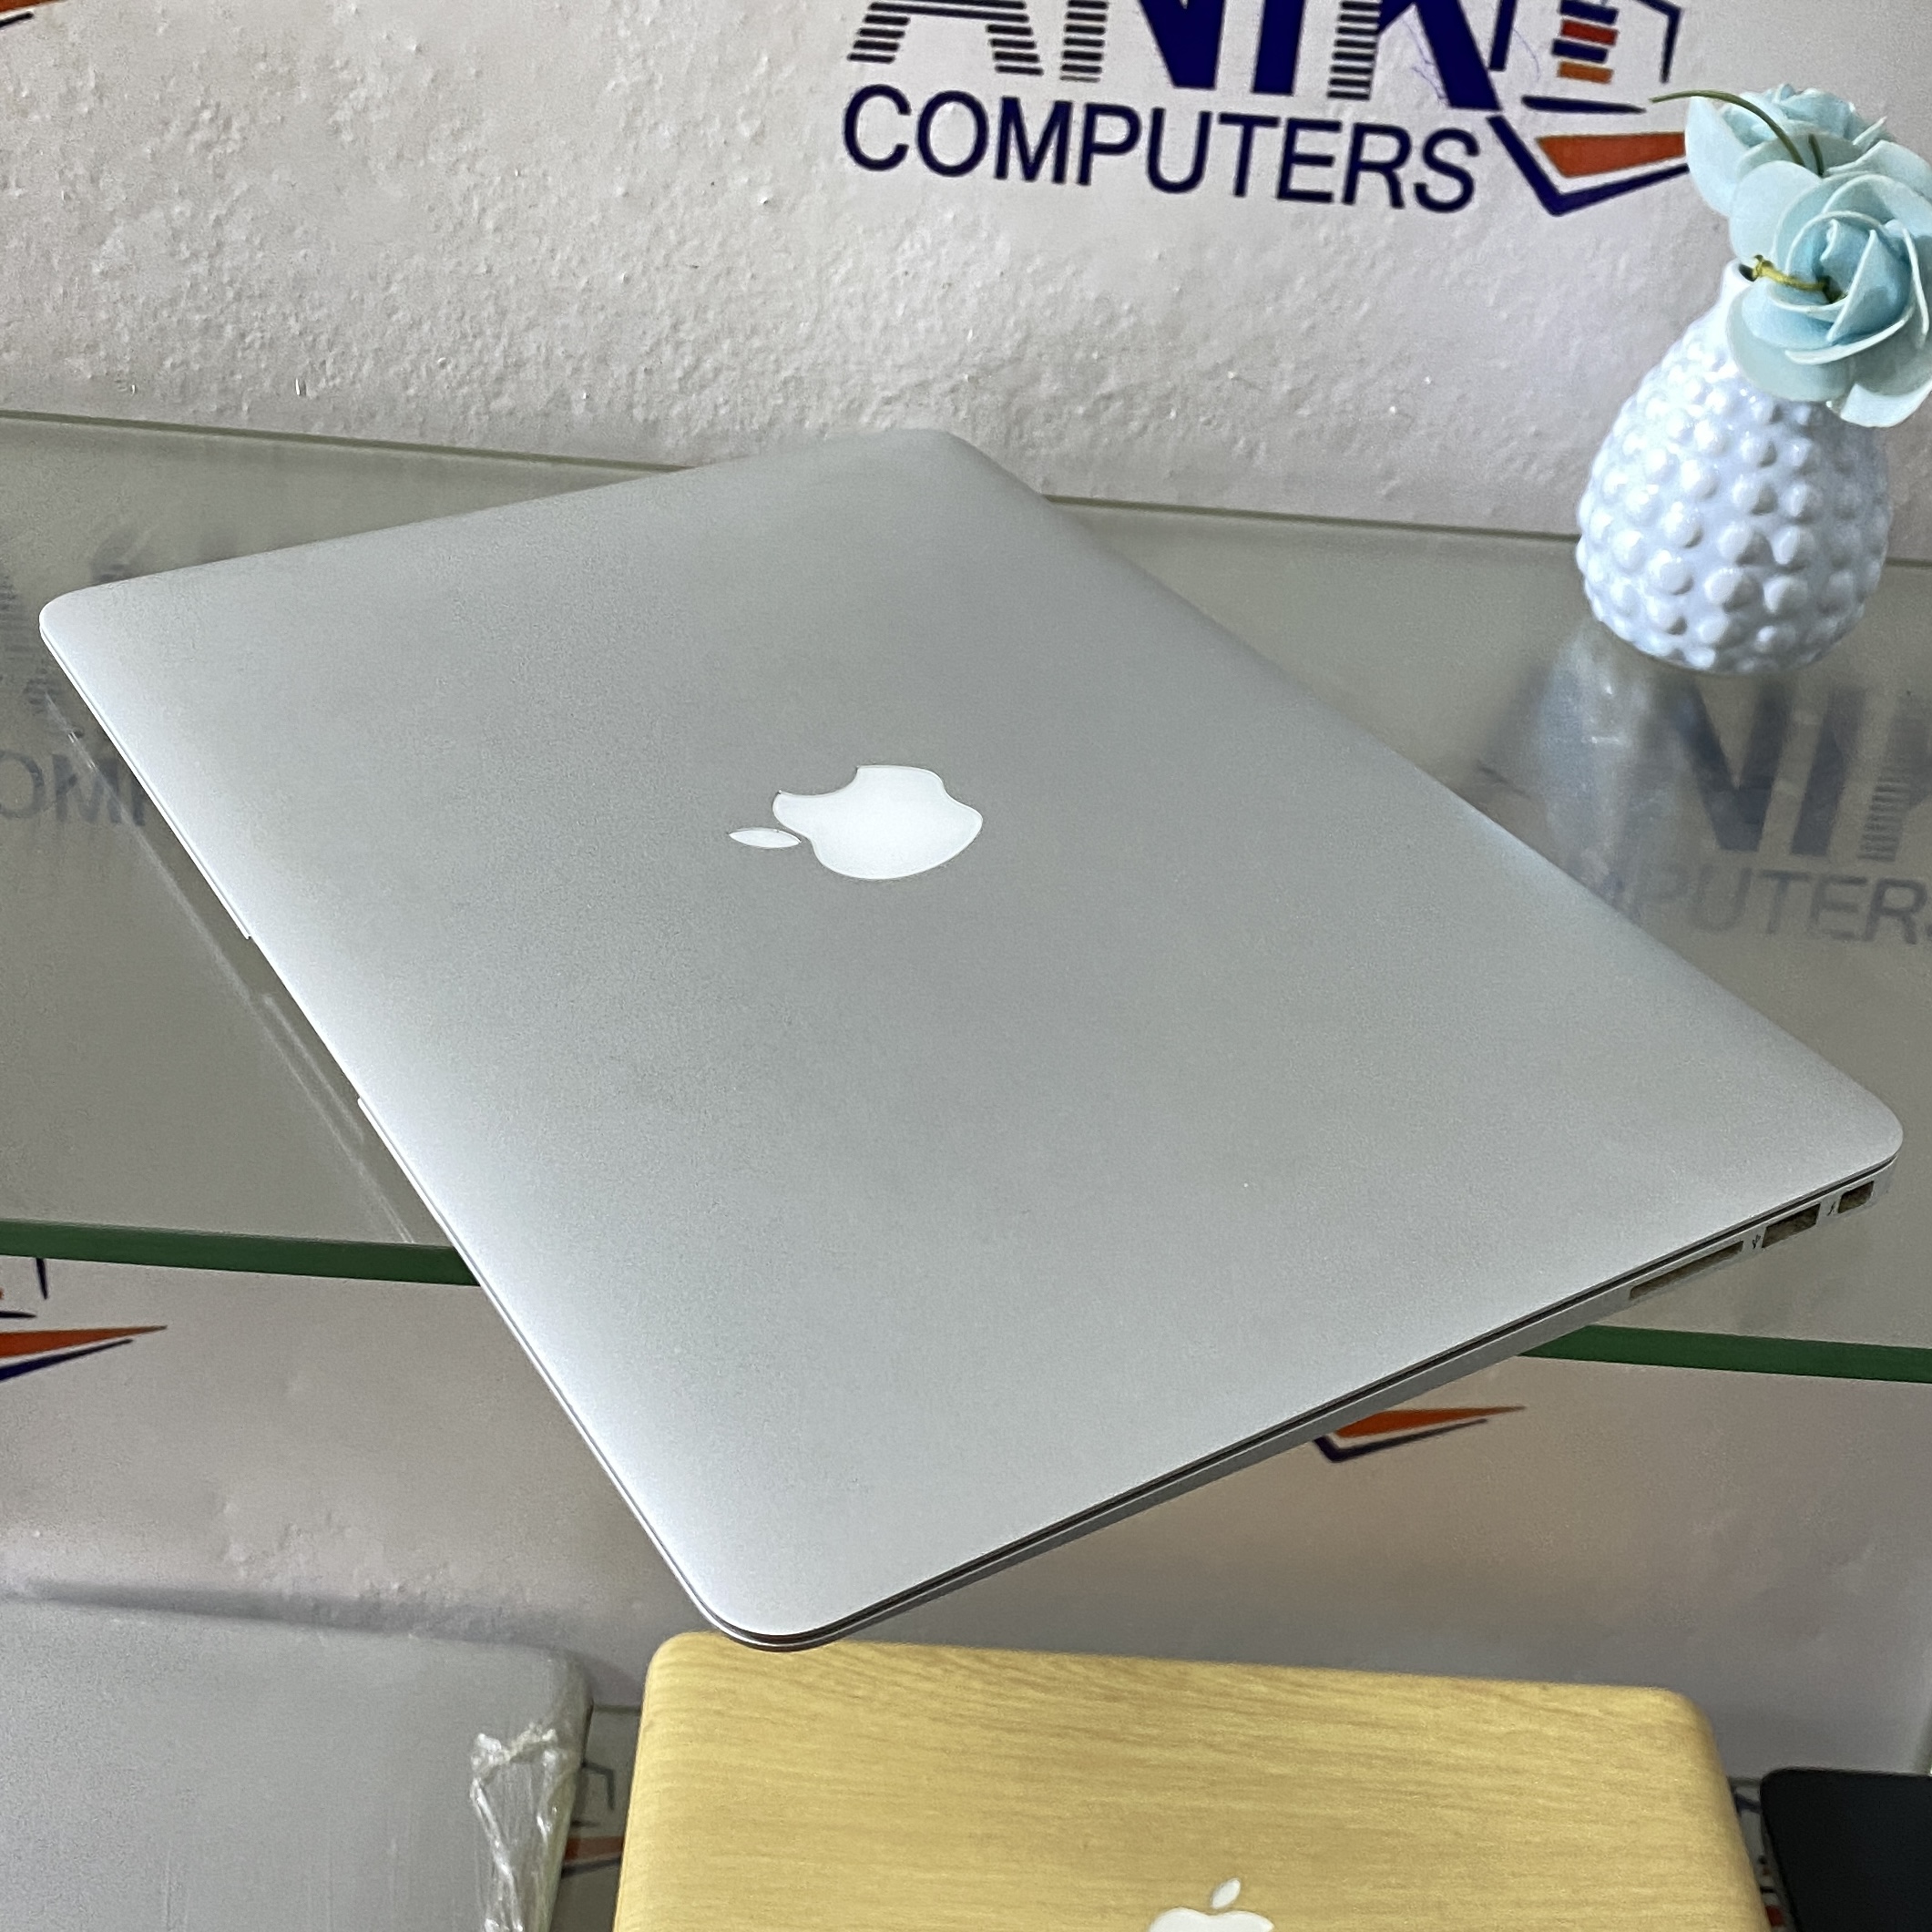 Apple MacBook Air - Intel Core i7 - 512gb SSD Storage - 8gb Ram - Keyboard  Light